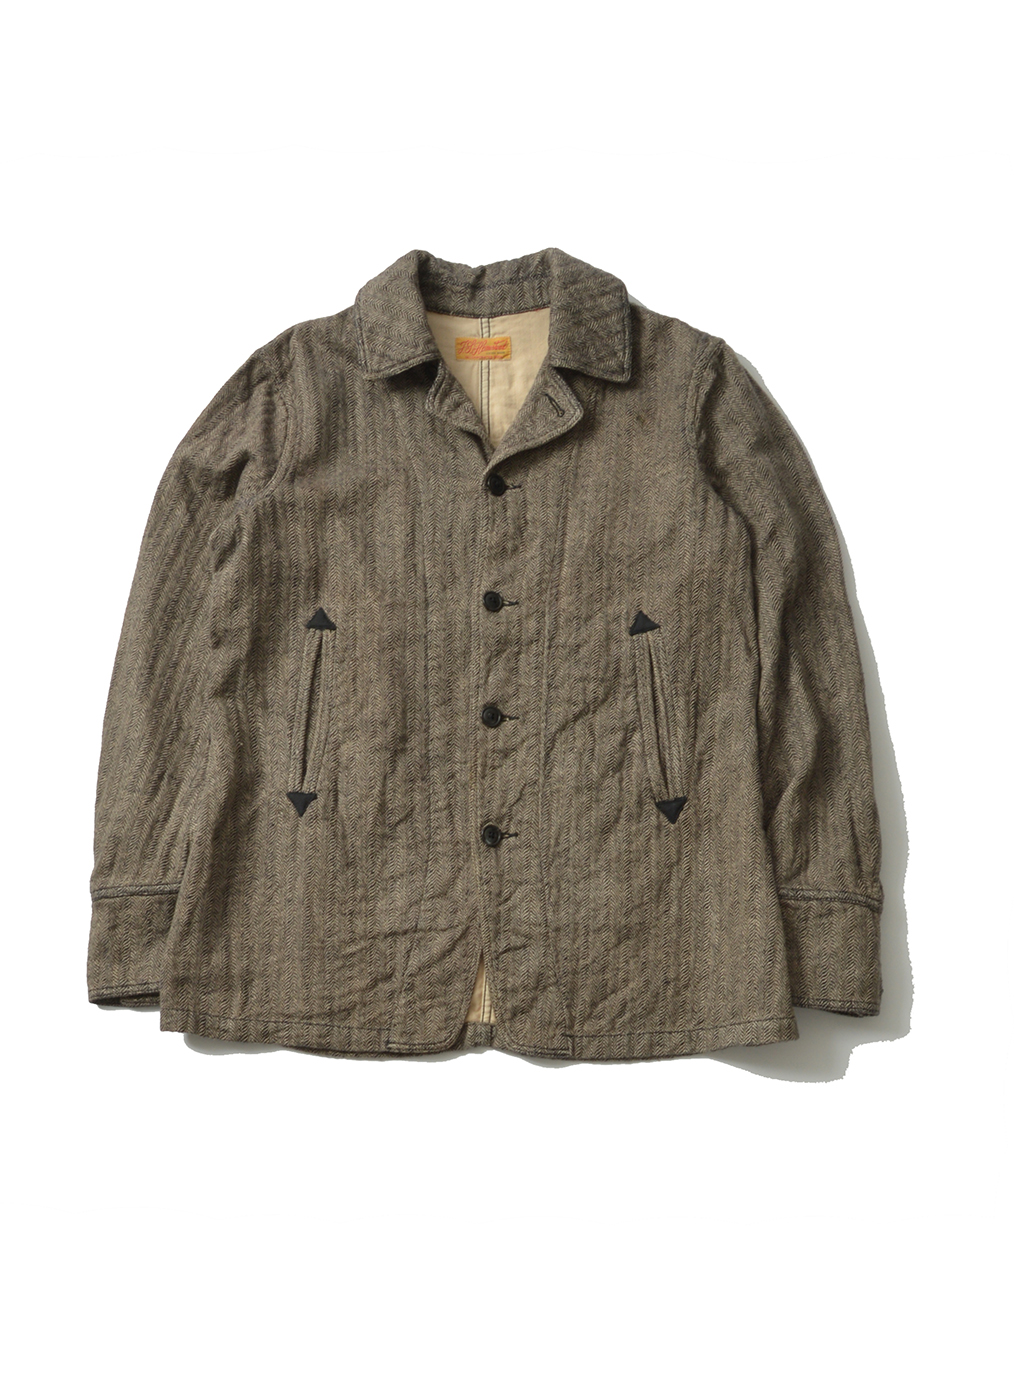 (Made in JAPAN) JOURNAL STANDARD tweed jacket